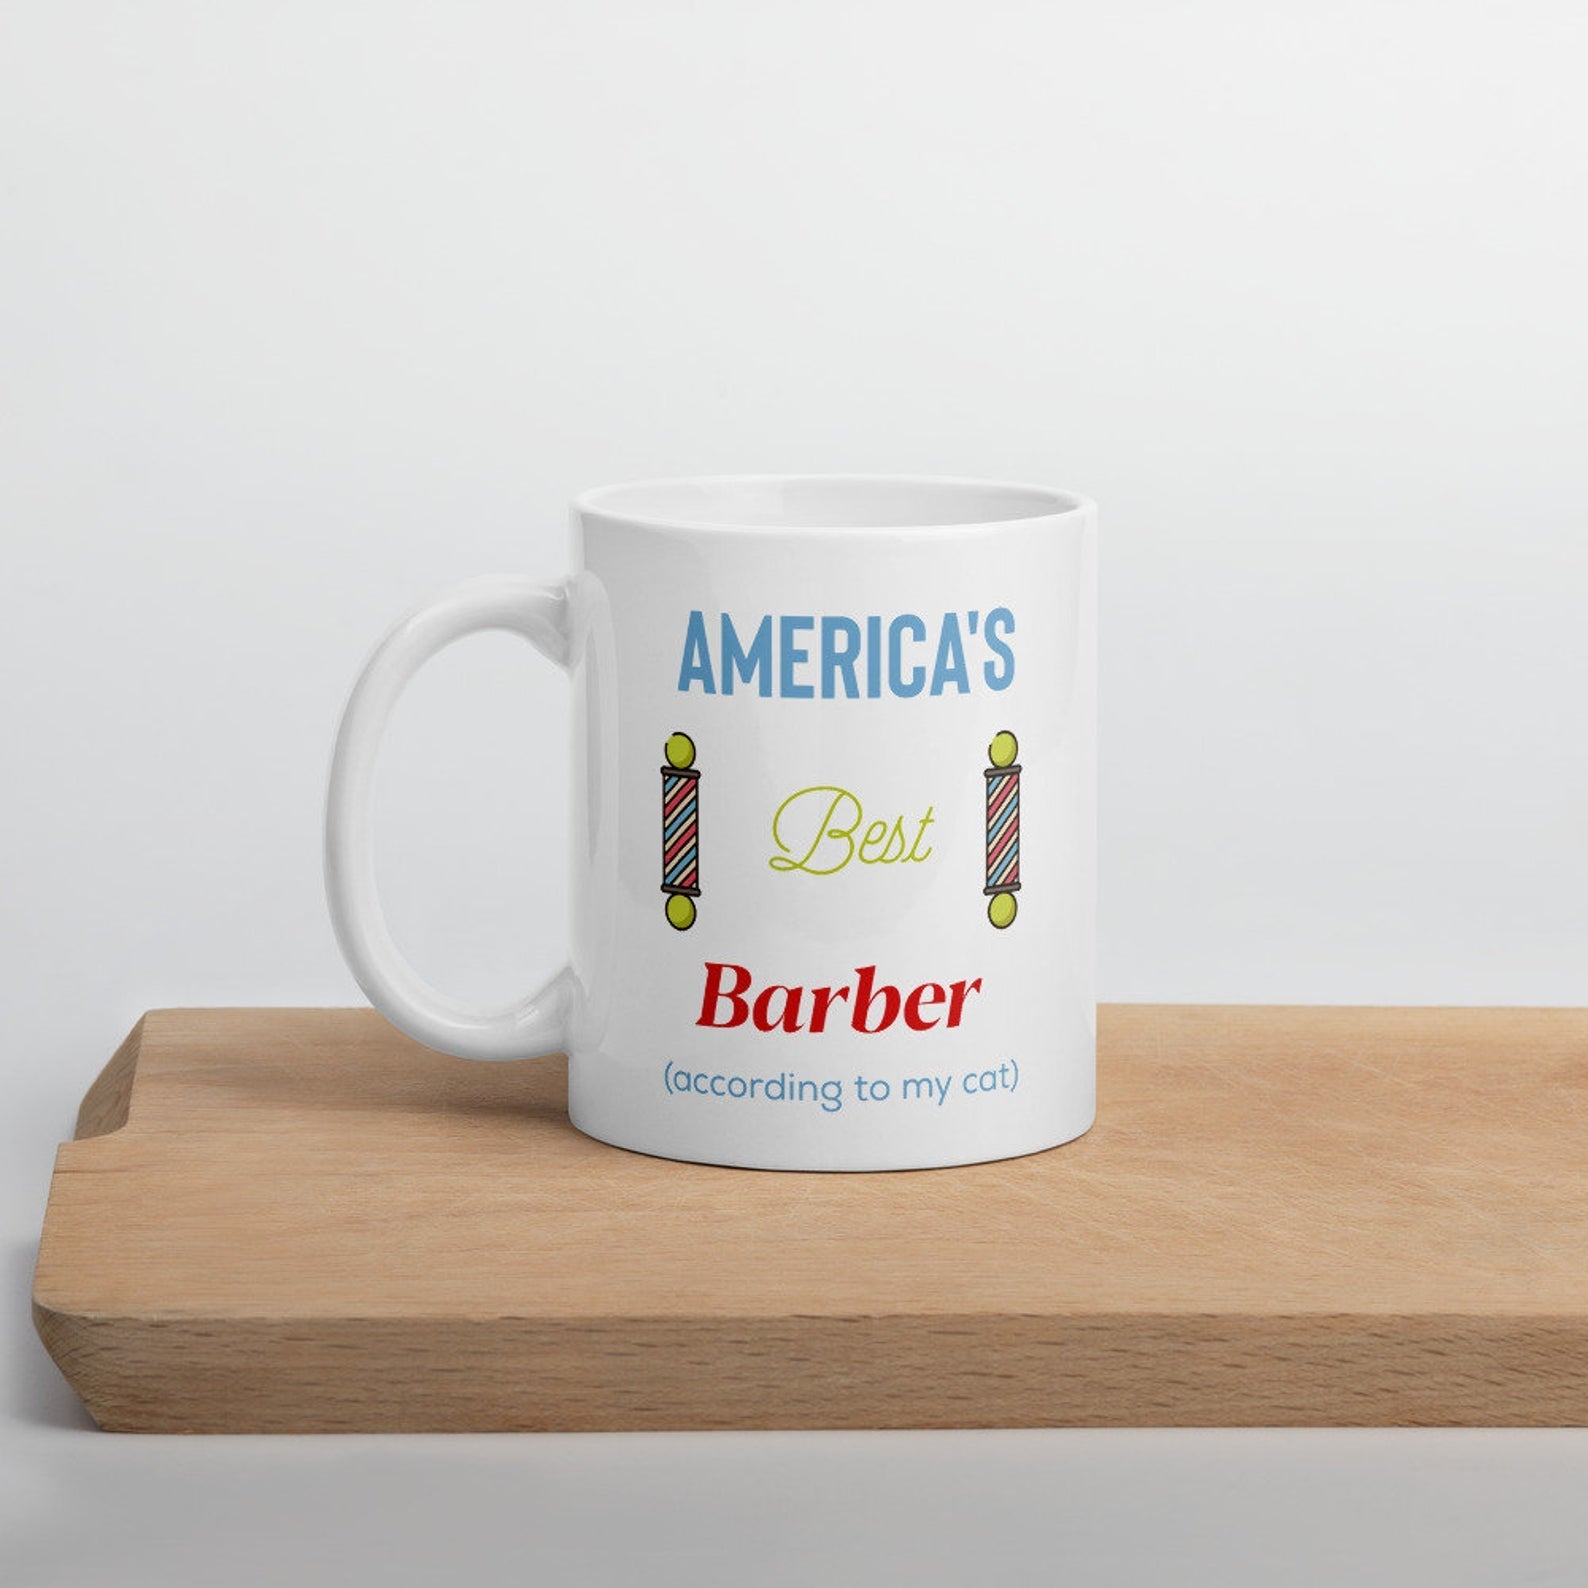 Best Barber Ever Americas Mug White Ceramic 11-15Oz Coffee Tea Cup